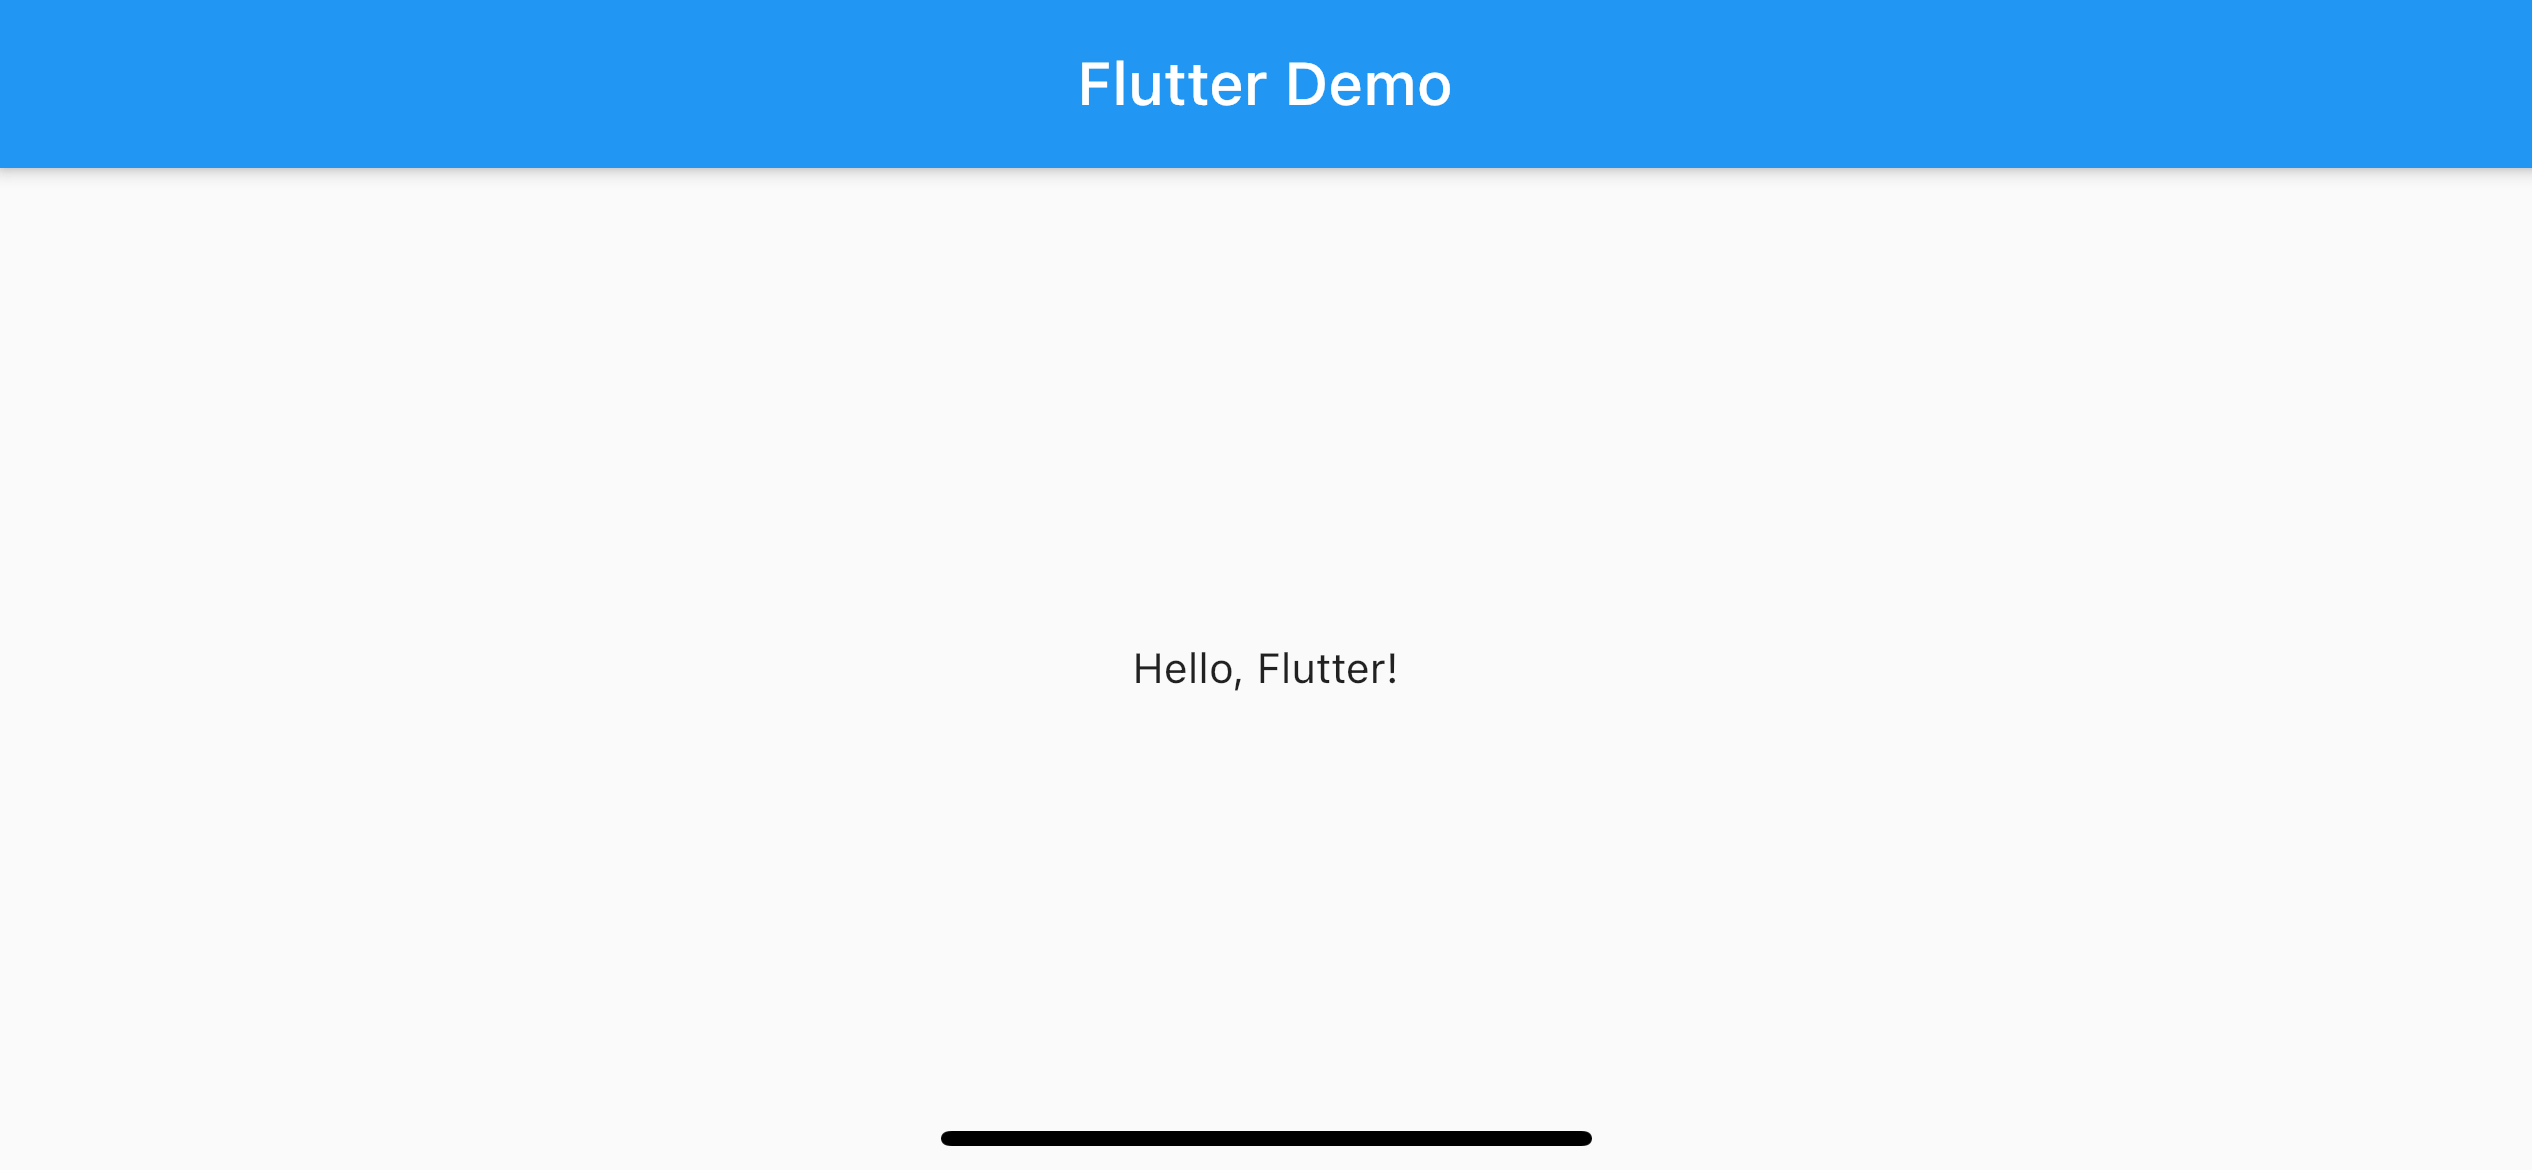 Cùng xem hình ảnh về Navigation Bar trong Flutter với giao diện trong suốt đầy tinh tế. Sử dụng Flutter, bạn có thể tạo ra một Navigation Bar đẹp mắt và dễ sử dụng cho ứng dụng của mình.